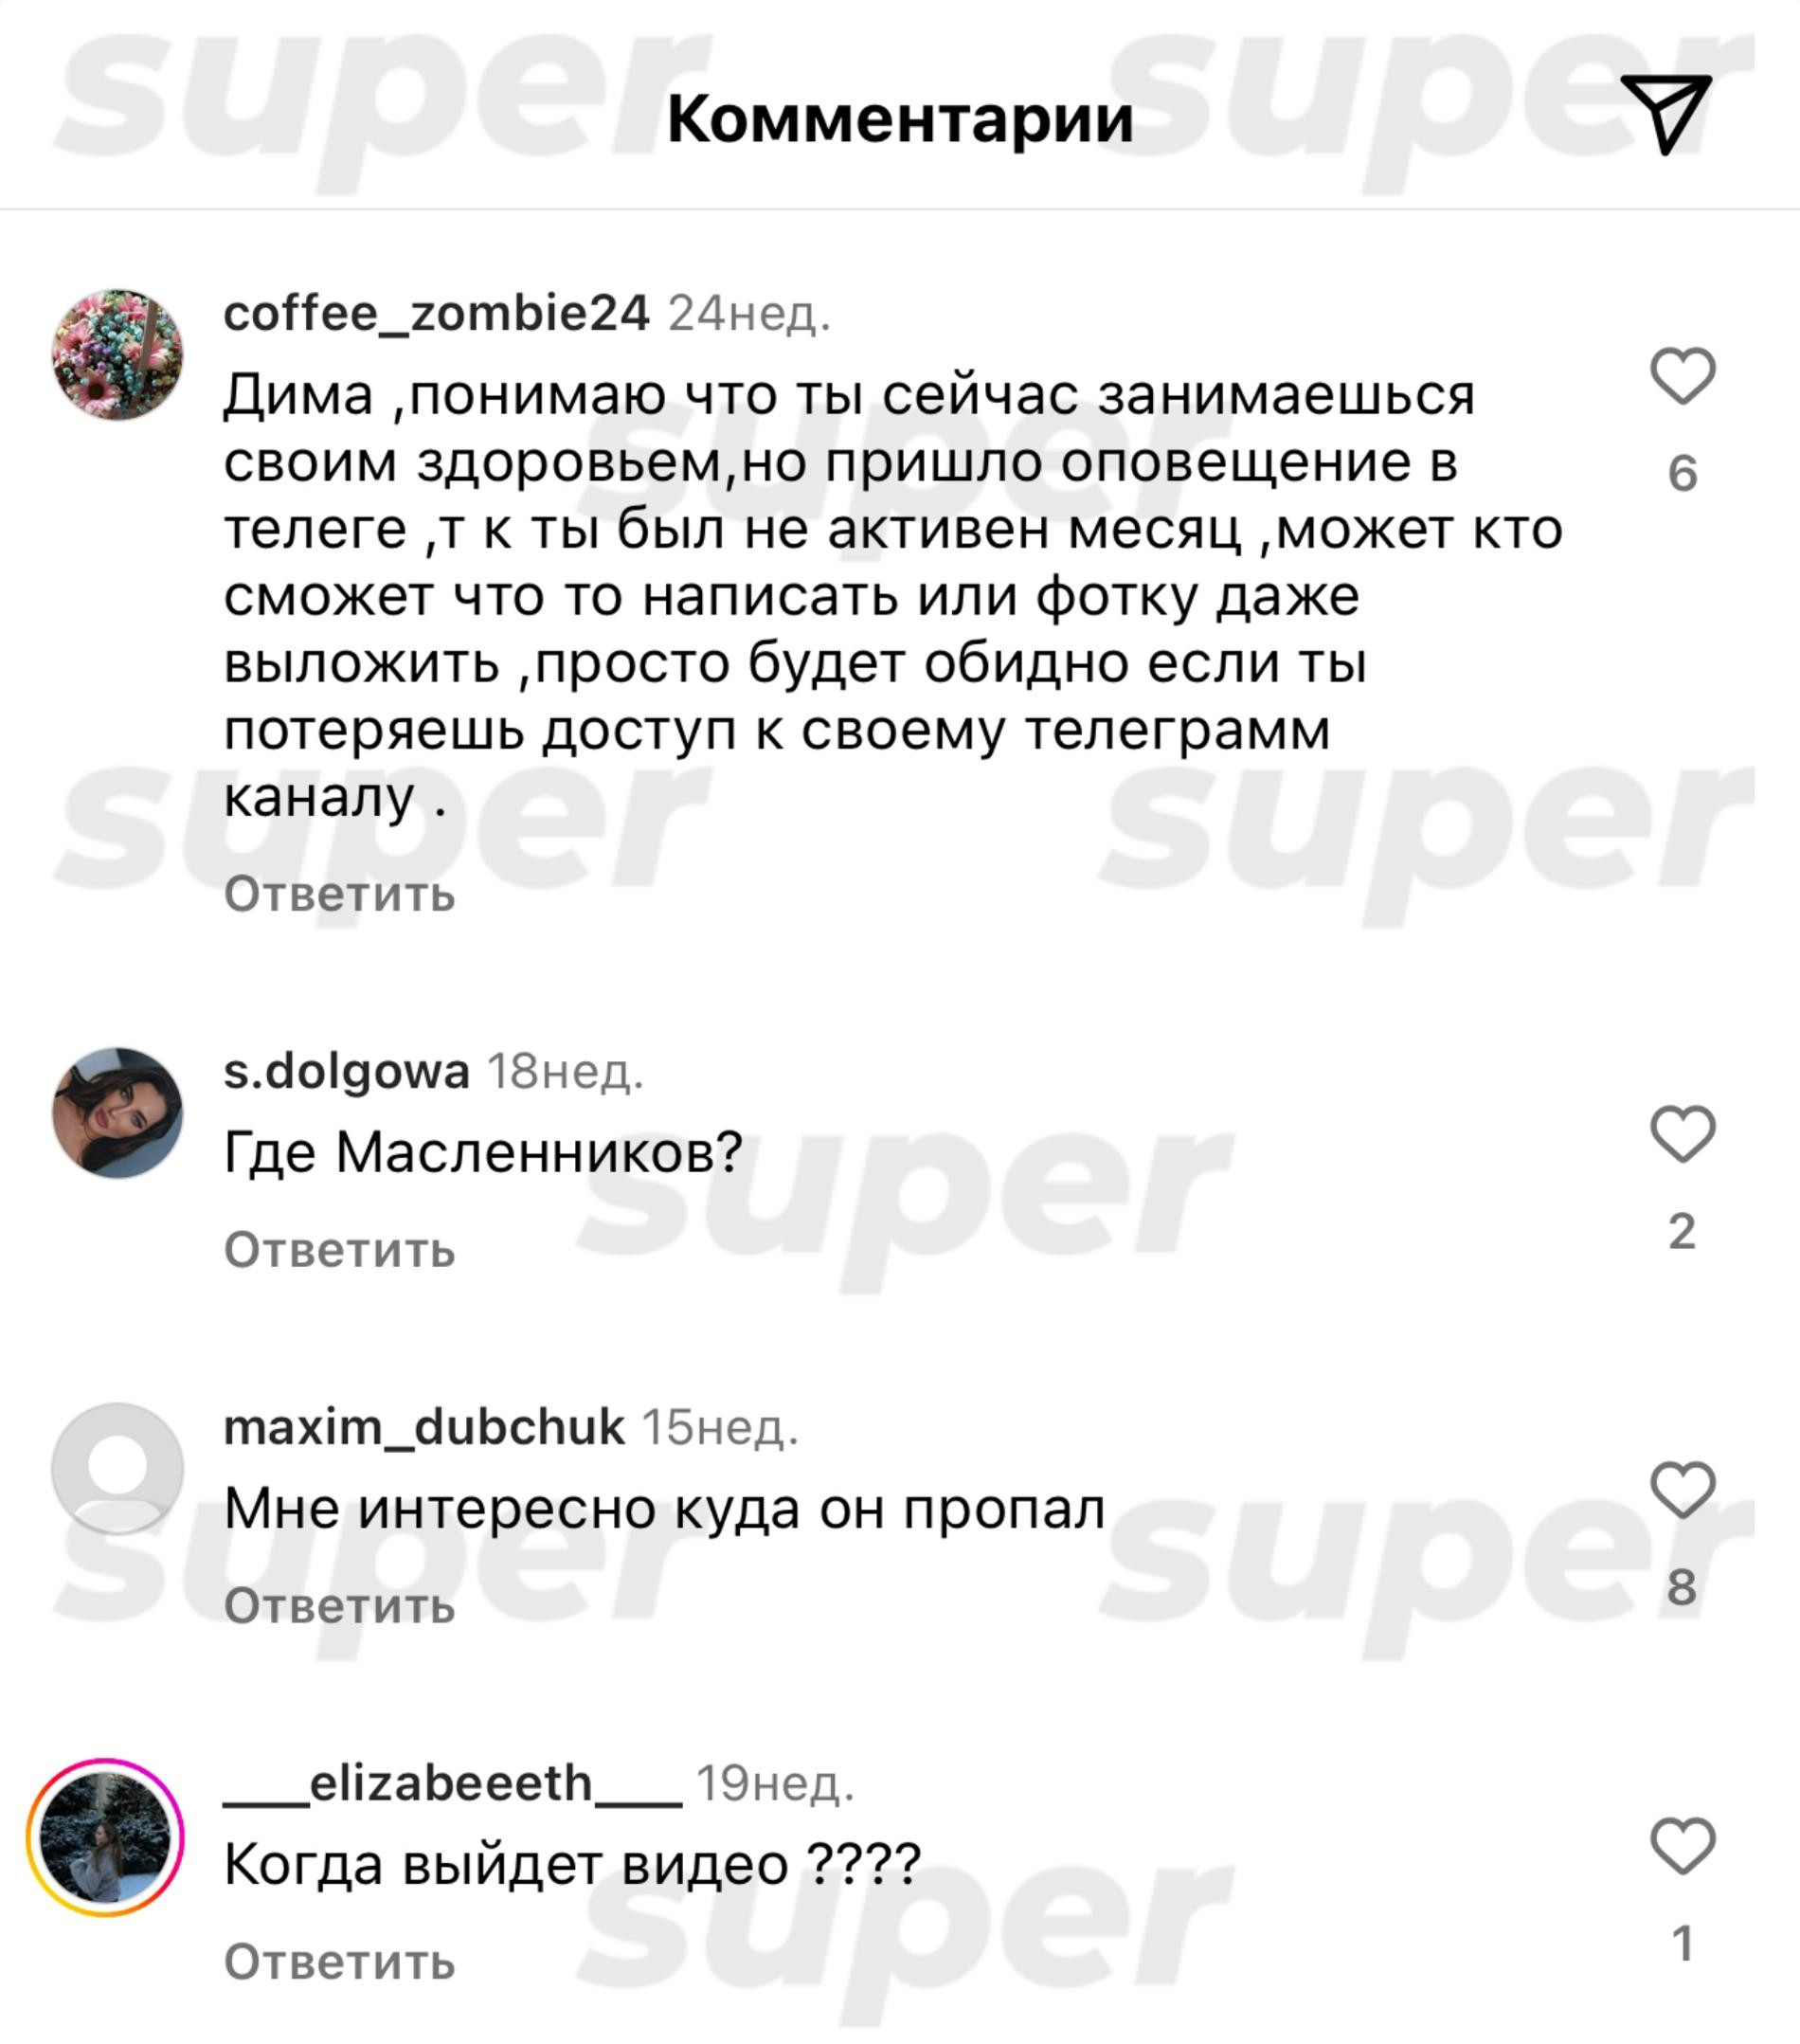 Комментарии под постом Димы Масленникова в Инстаграме (запрещен в РФ). Фото: Super